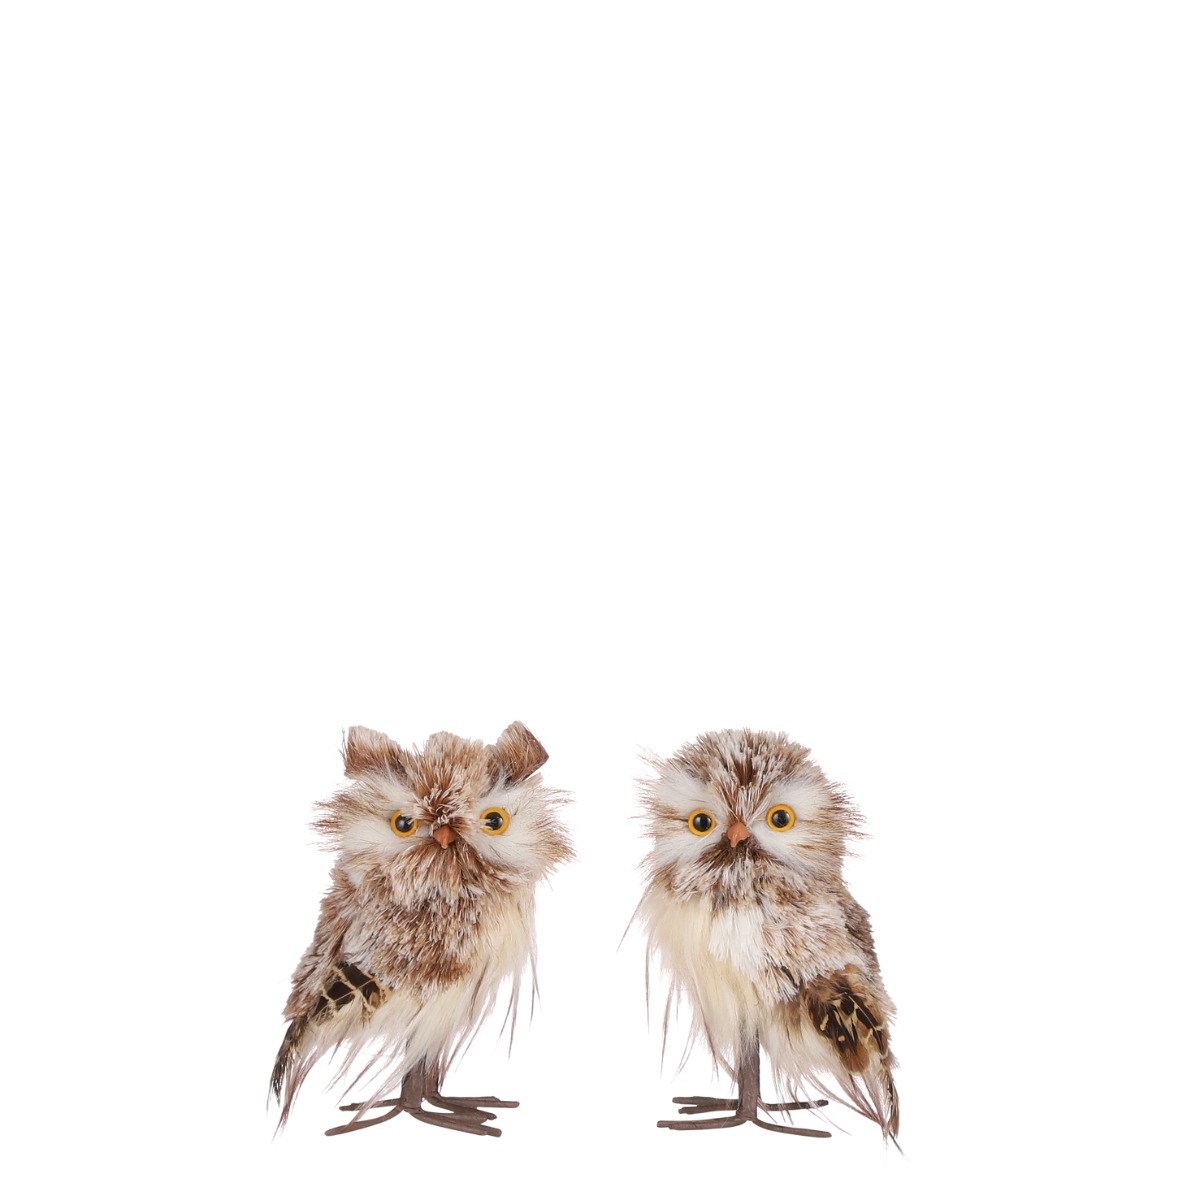 Billede af Brun og hvid ugle - Ugle uden ører